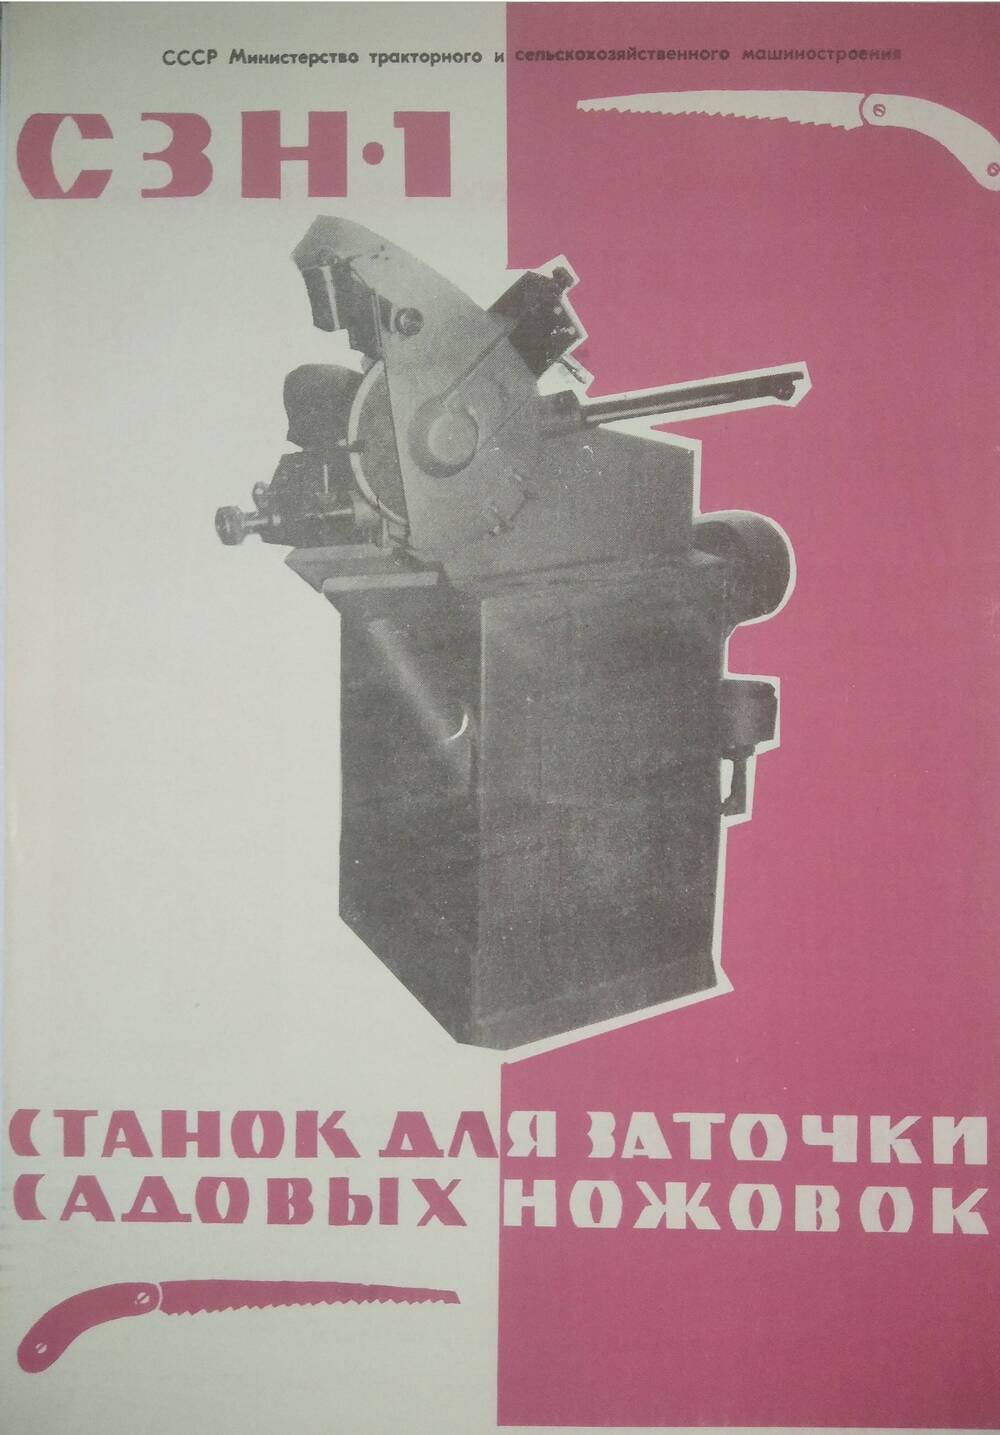 Реклама Павловского опытно-экспериментального завода механизированного инструмента и СКБ по механизированному инструменту.